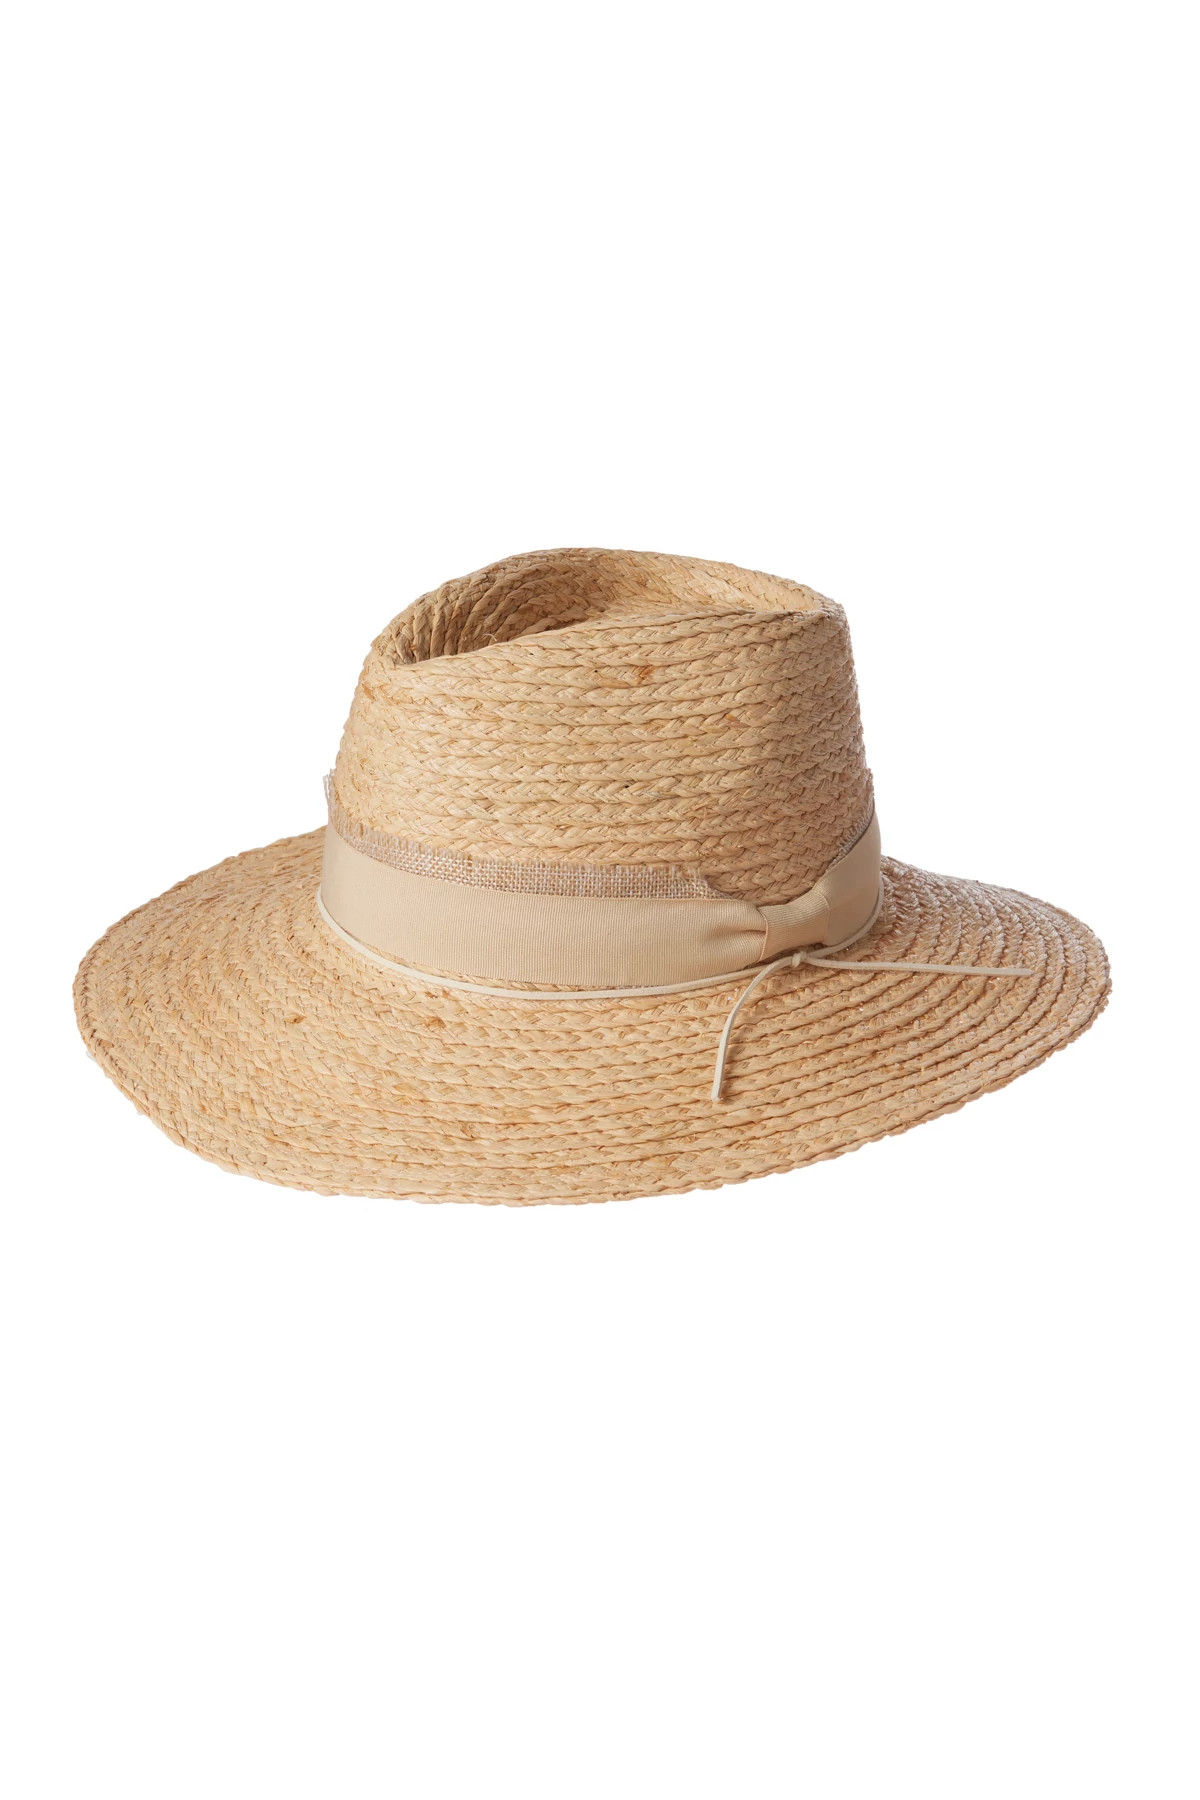 NATURAL Nat Panama Hat image number 1